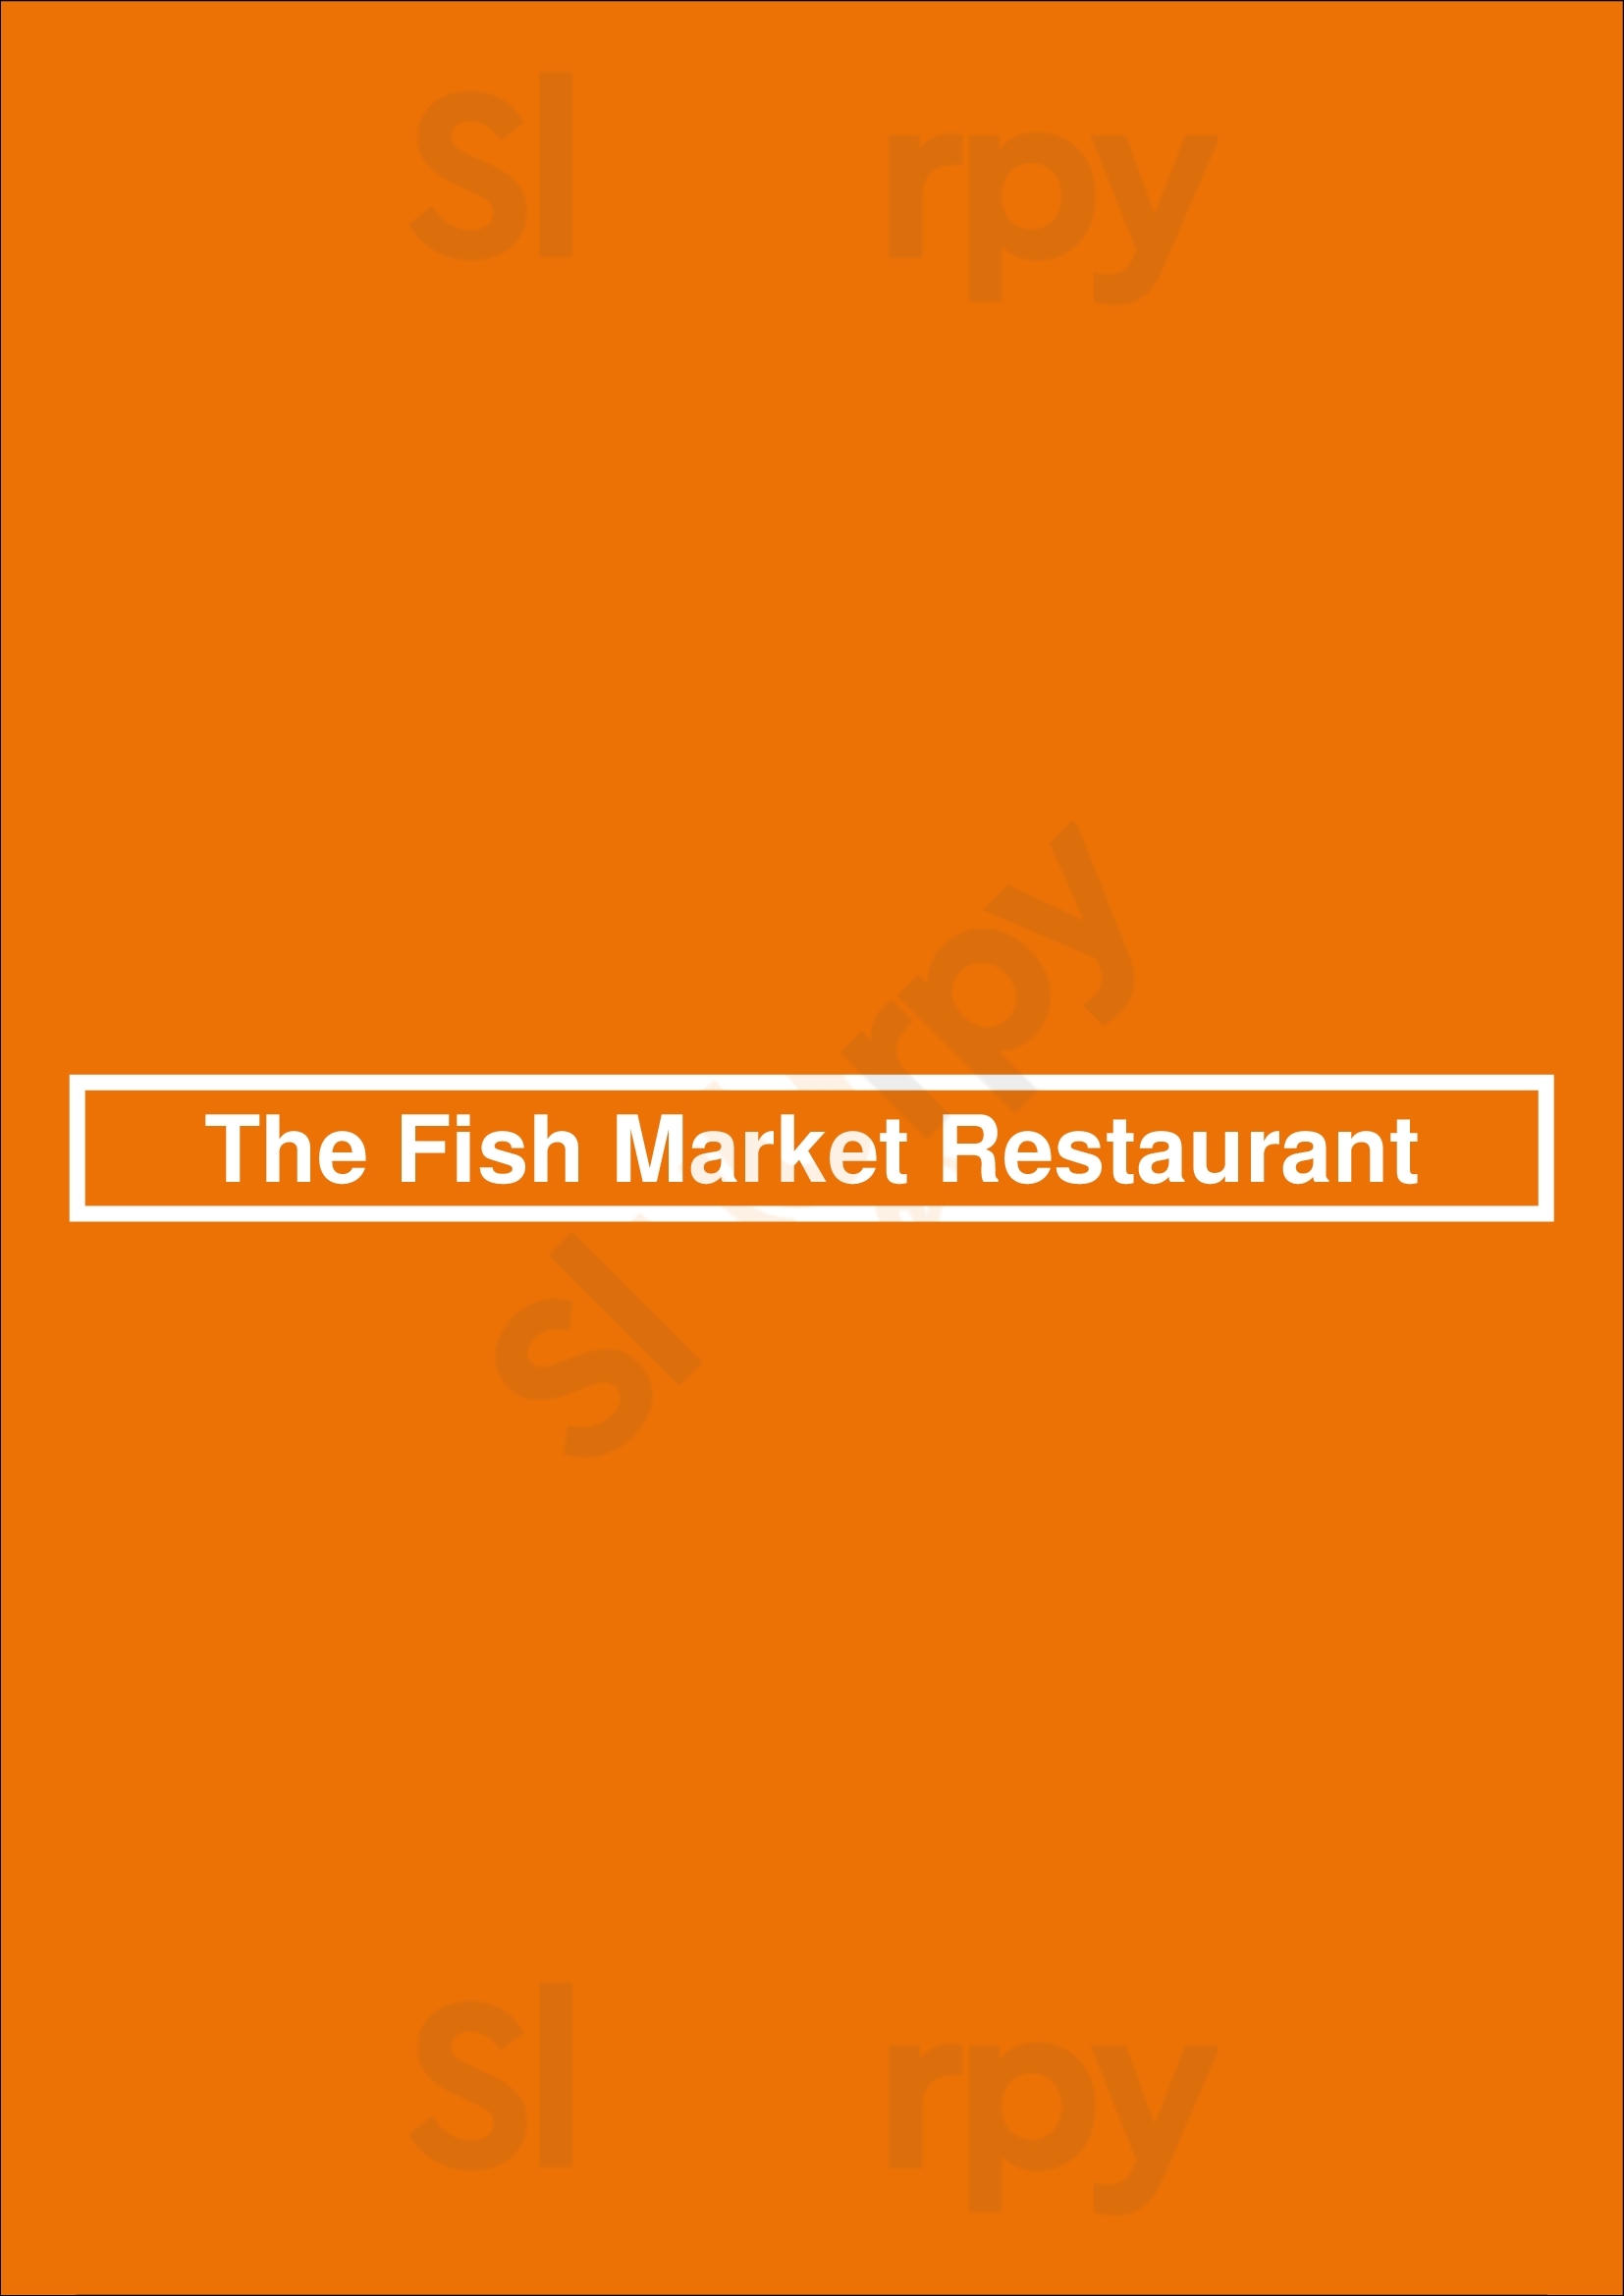 The Fish Market Restaurant Ottawa Menu - 1